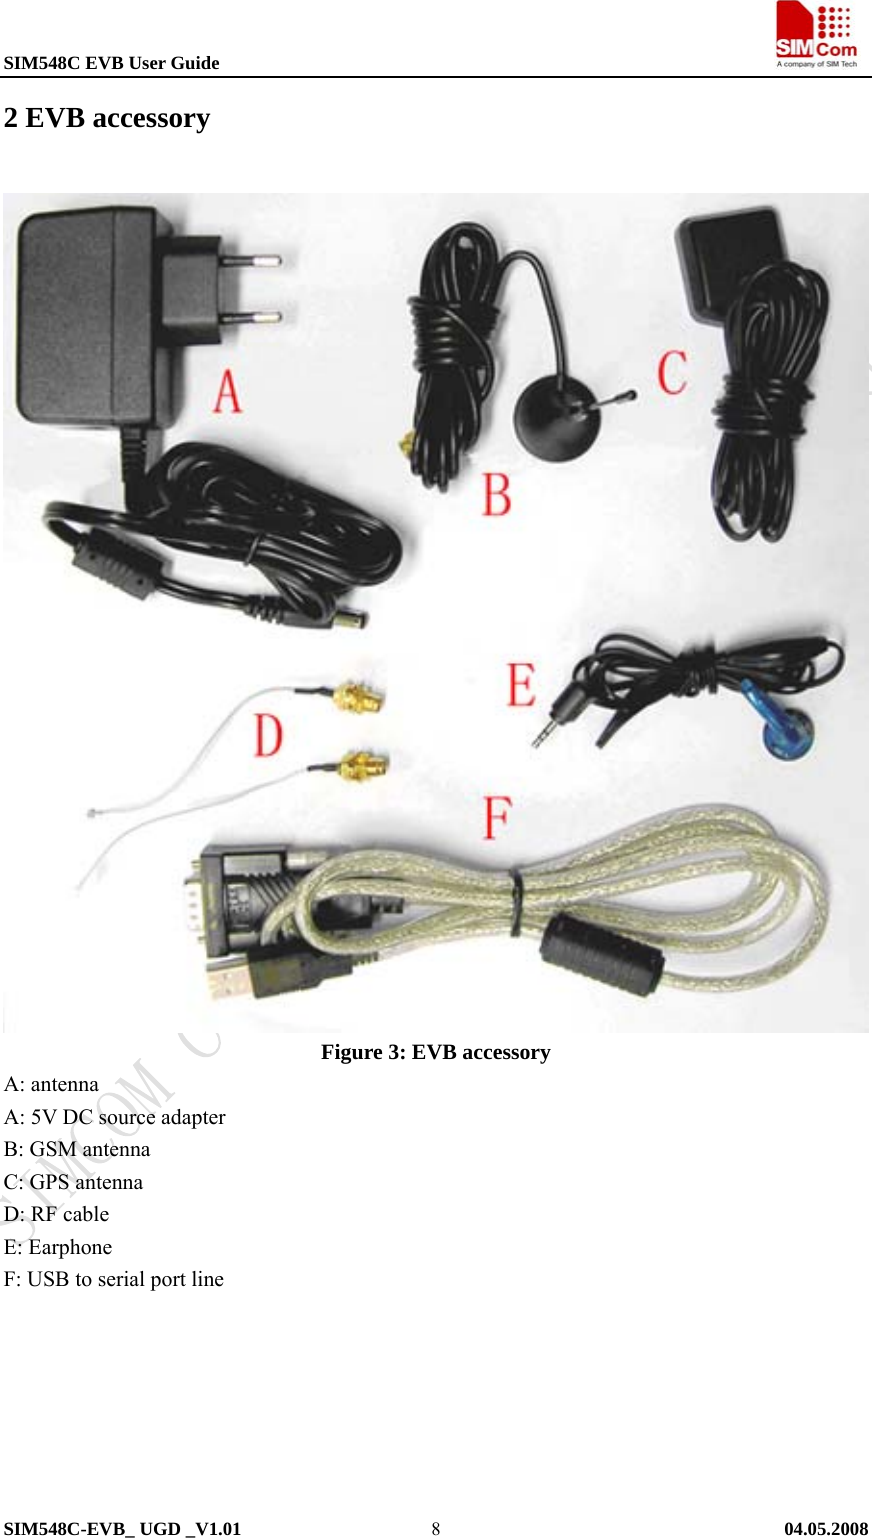 SIM548C EVB User Guide                                                             SIM548C-EVB_ UGD _V1.01   04.05.2008   82 EVB accessory  Figure 3: EVB accessory A: antenna A: 5V DC source adapter B: GSM antenna   C: GPS antenna D: RF cable   E: Earphone F: USB to serial port line   